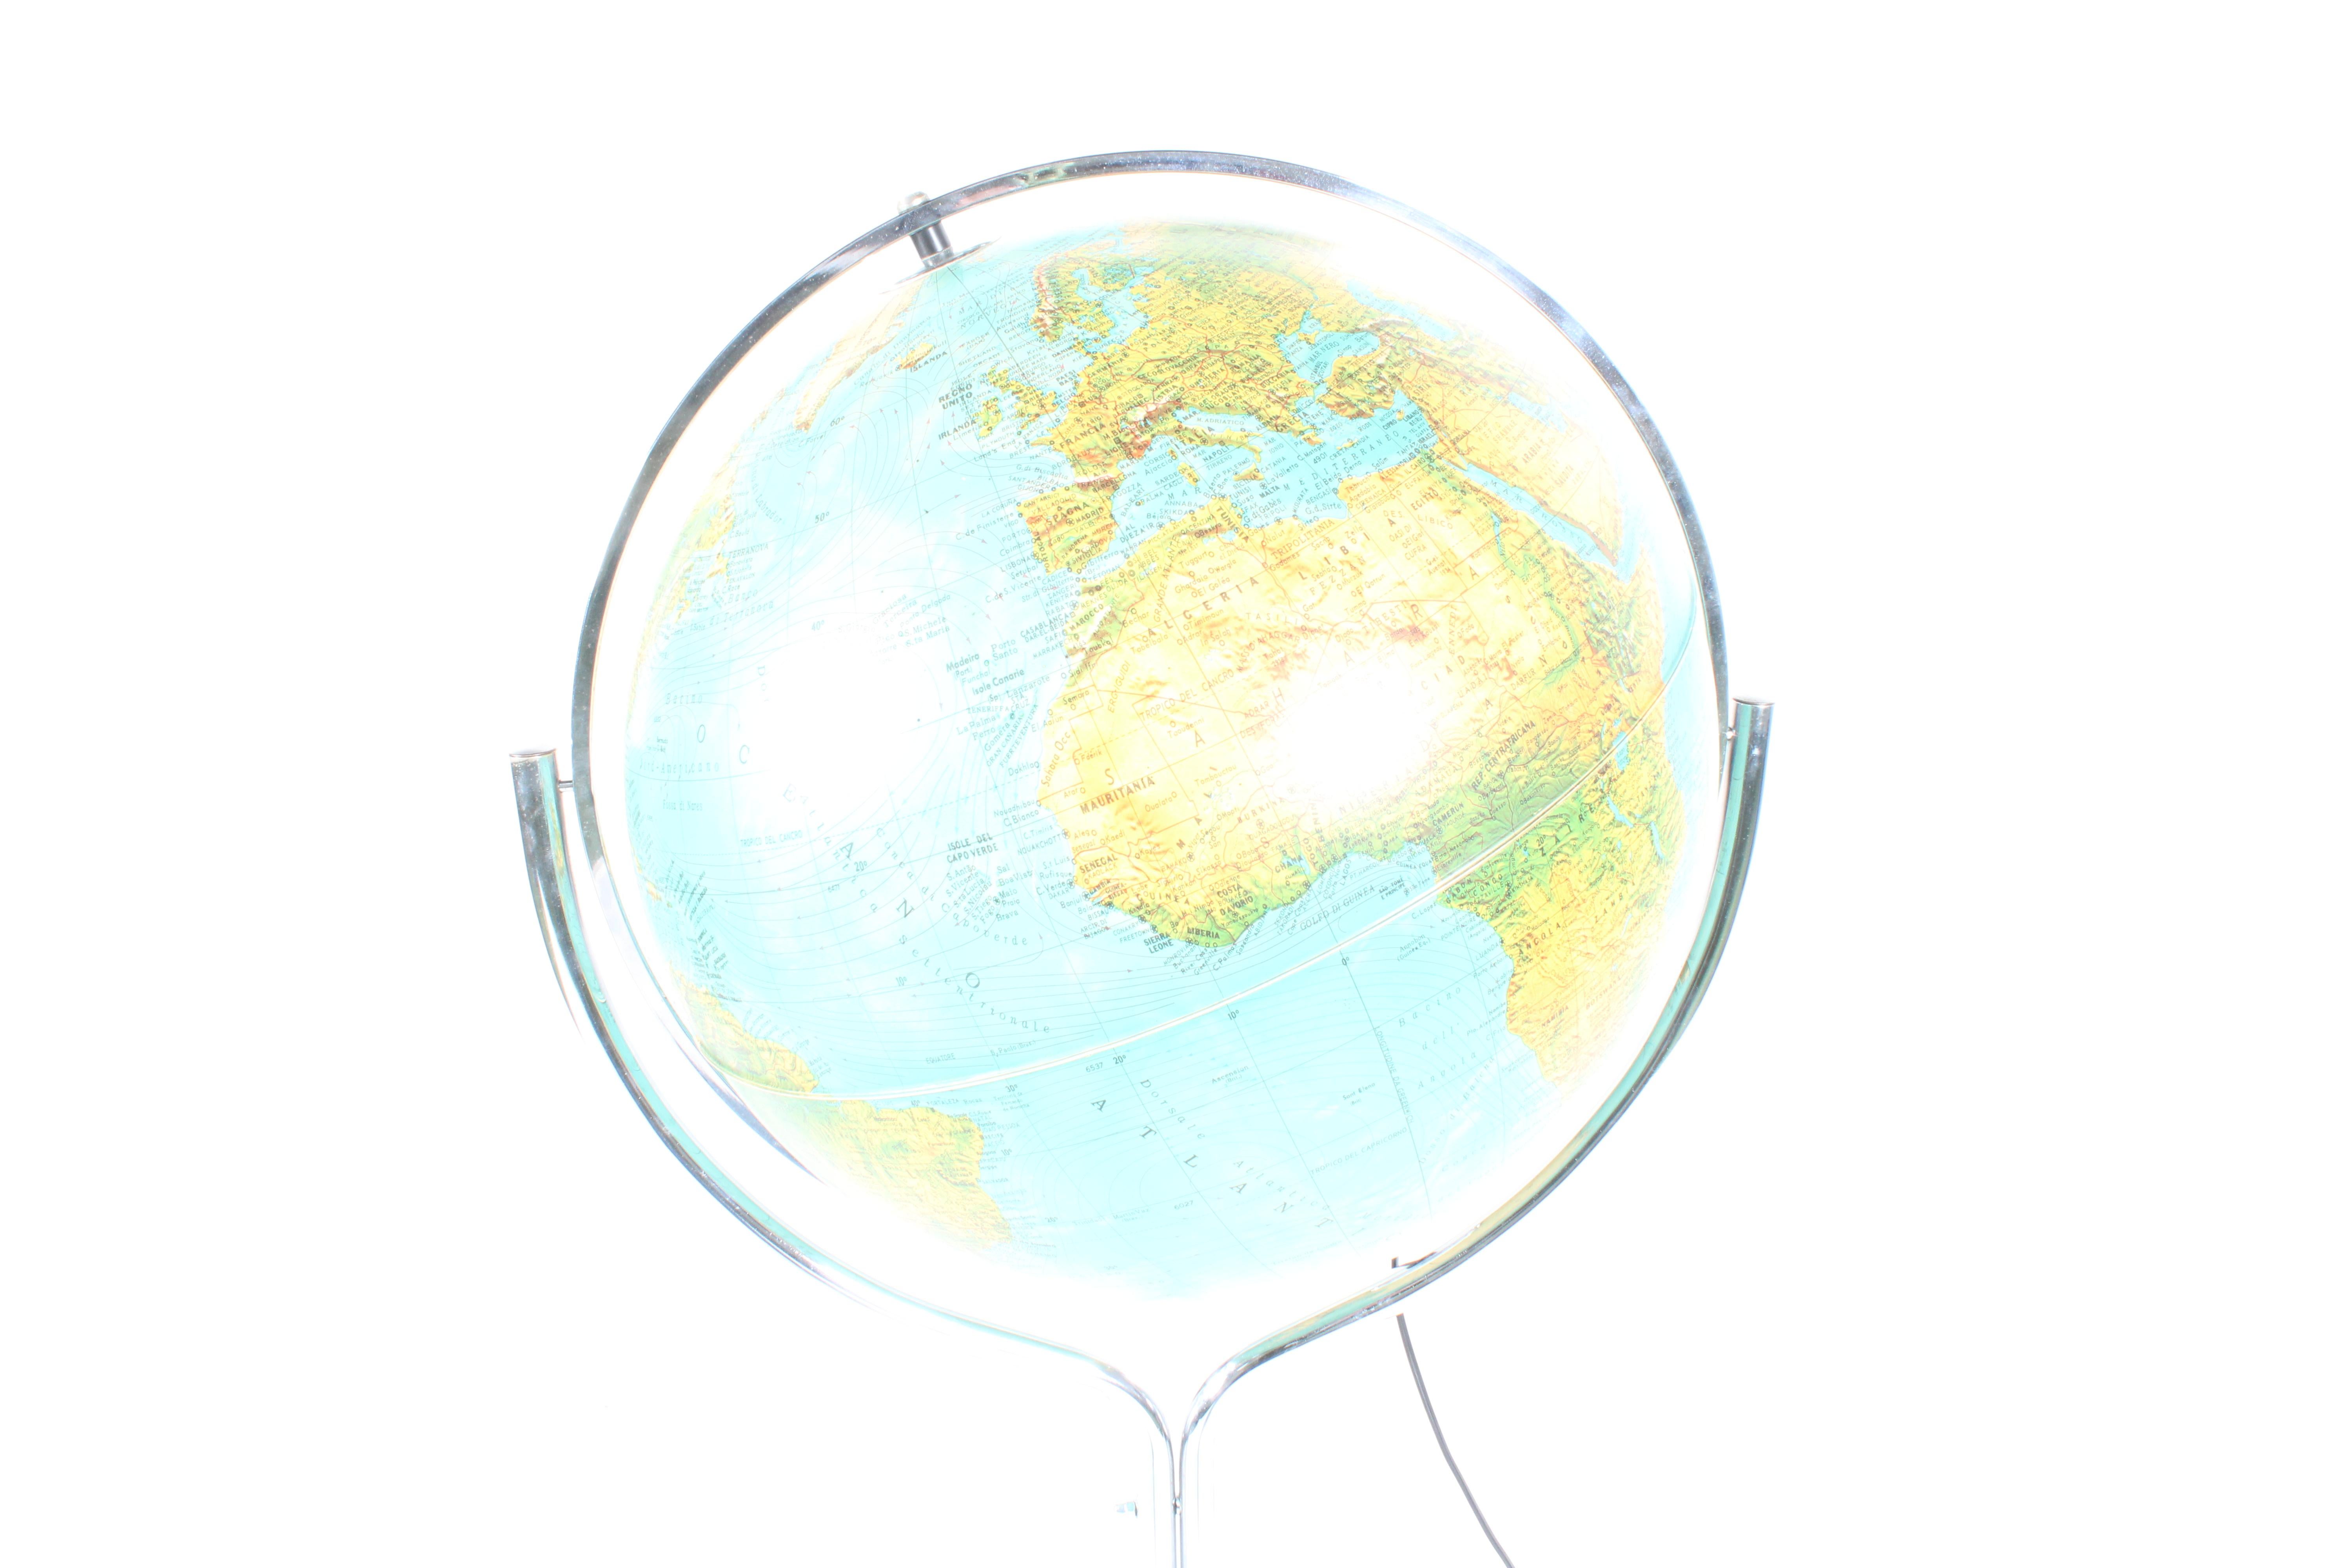 Chrome Superbe globe italien autoportant par Ricoscope Florence, livraison gratuite